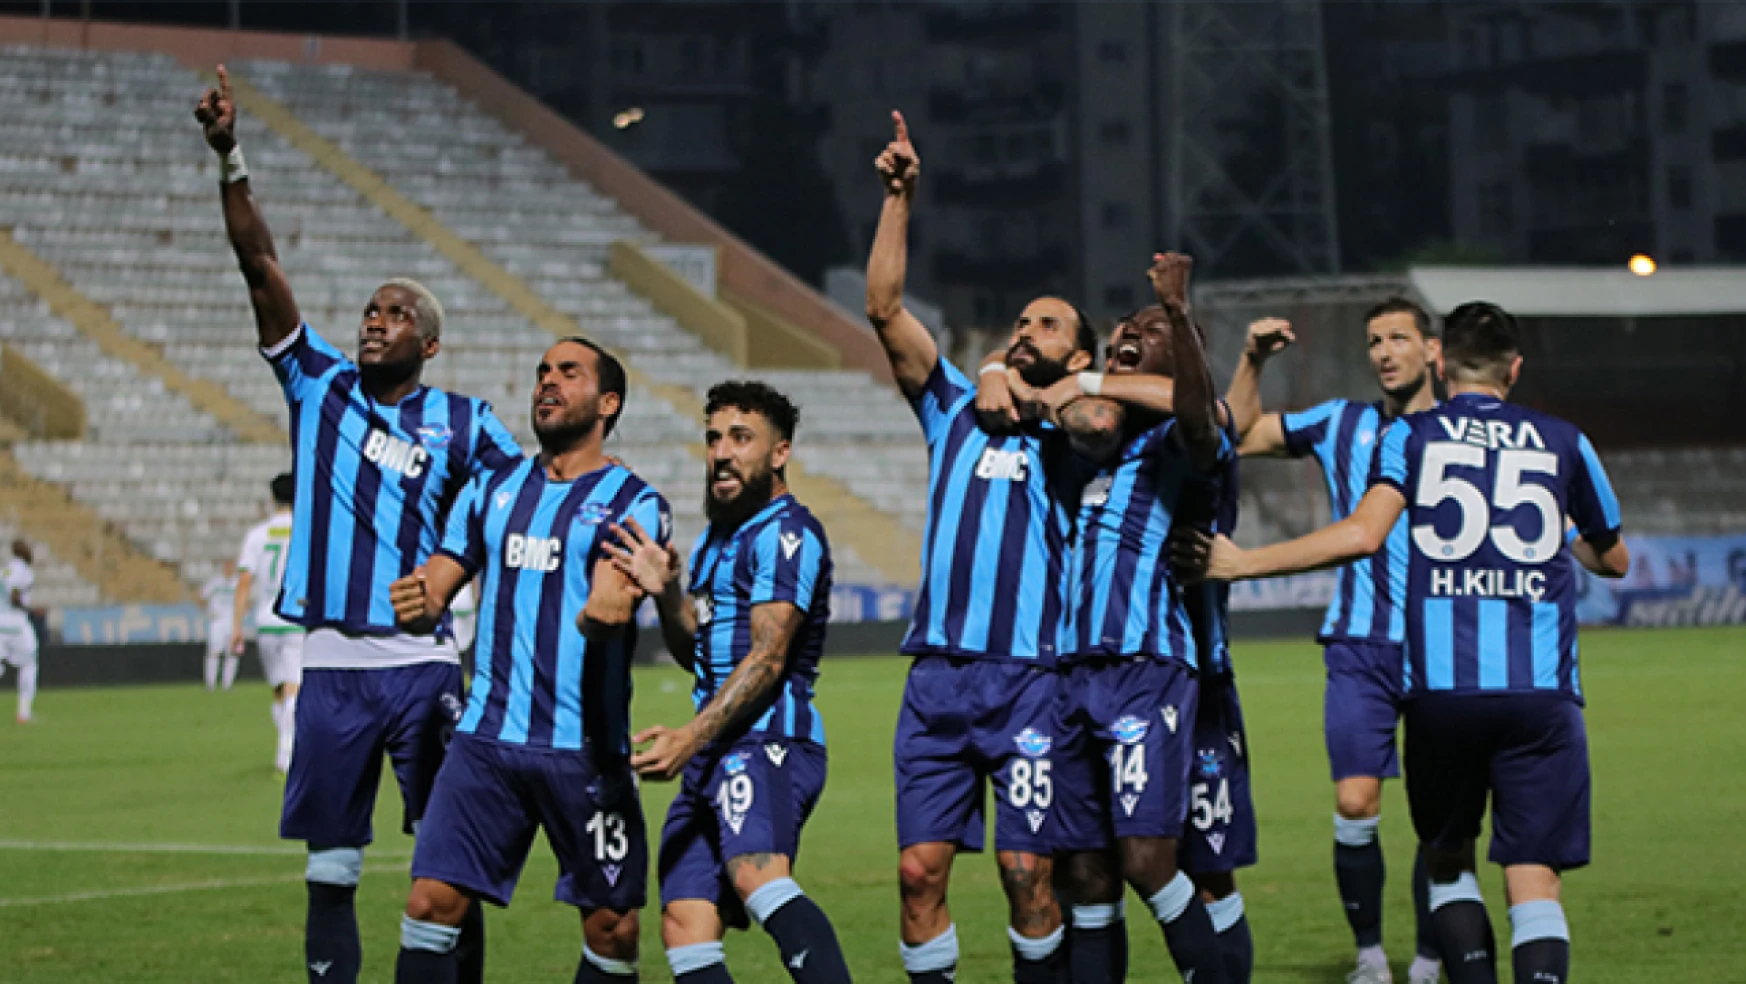 Adana Demirspor Roma ile yardım maçı düzenleyecek